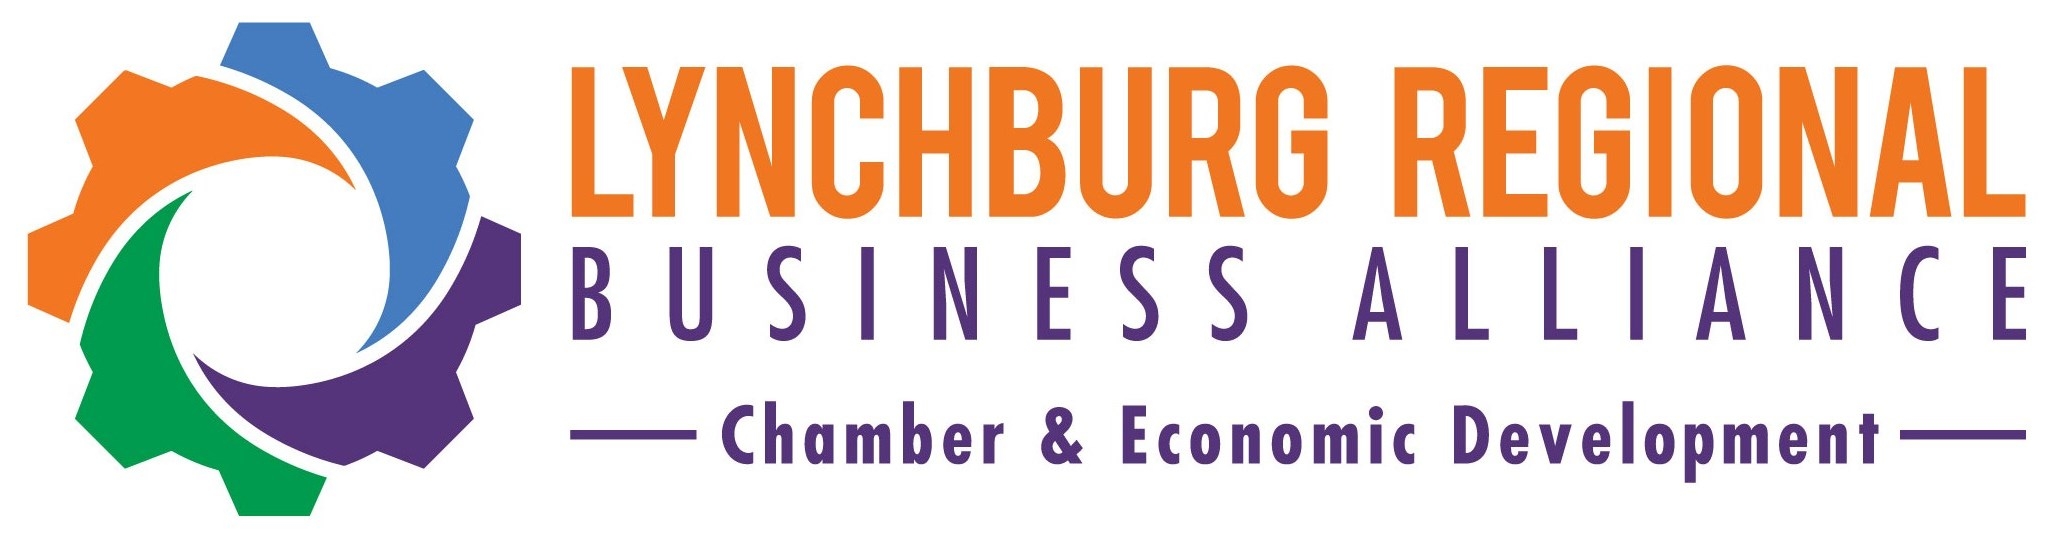 Lynchburg Regional Business Alliance Logo